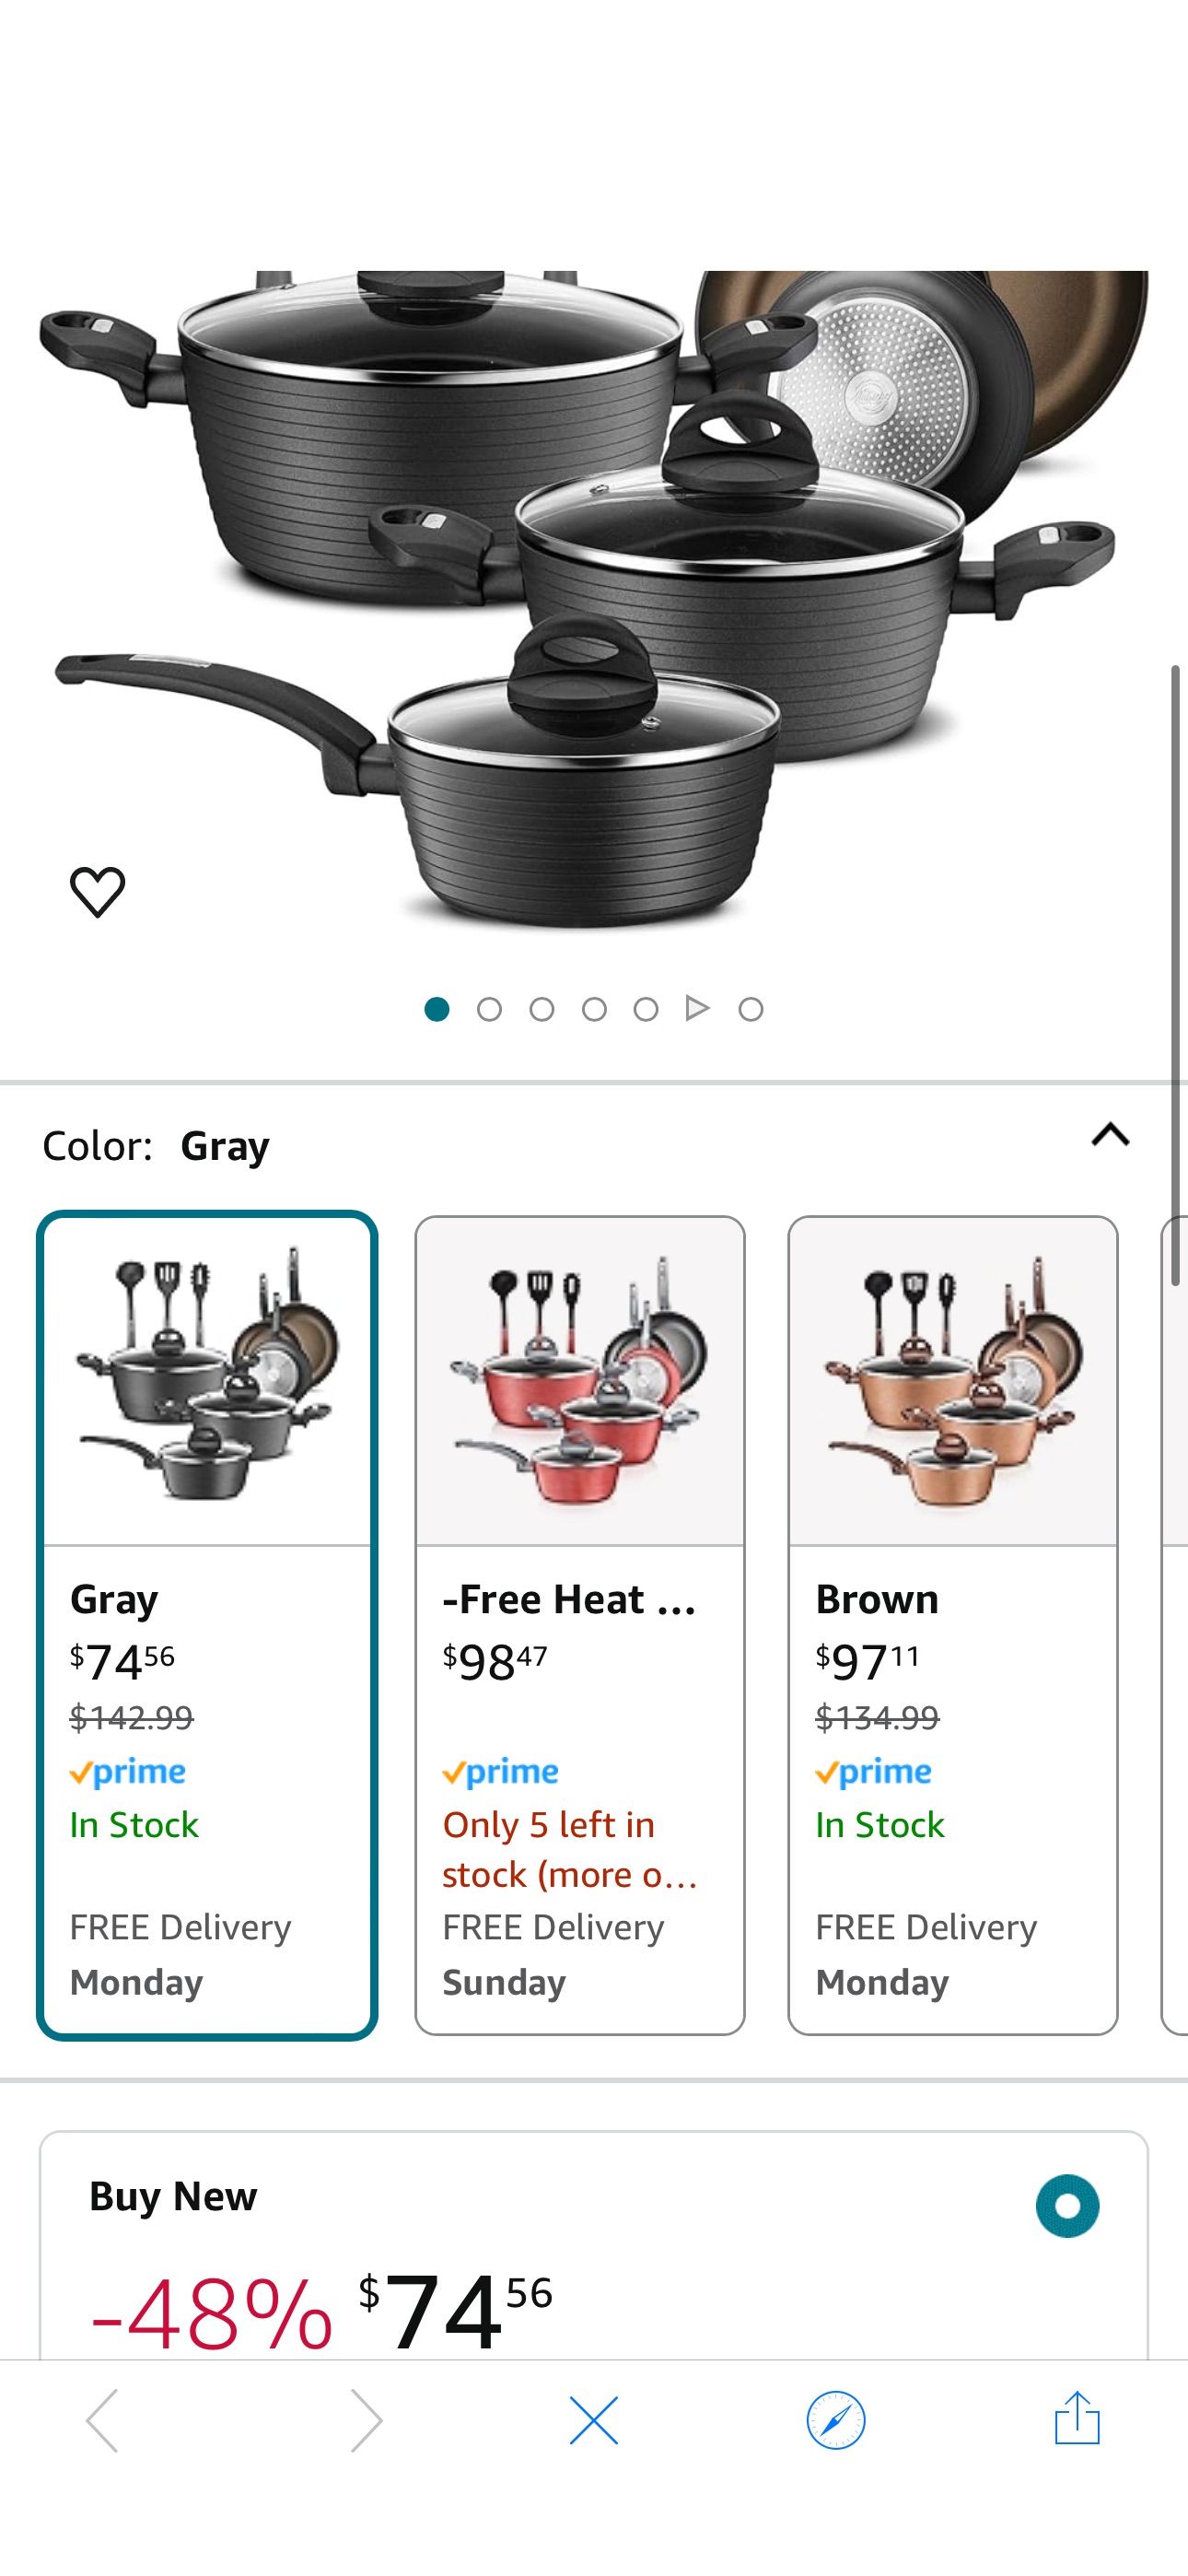 Amazon.com: NutriChef 12-Piece Nonstick Kitchen Cookware Set - Professional Hard Anodized Home Kitchen Ware Pots and Pans Set, Includes Saucepan, Frying Pans, Cooking Pots, Dutch Oven Pot, Lids, Utens